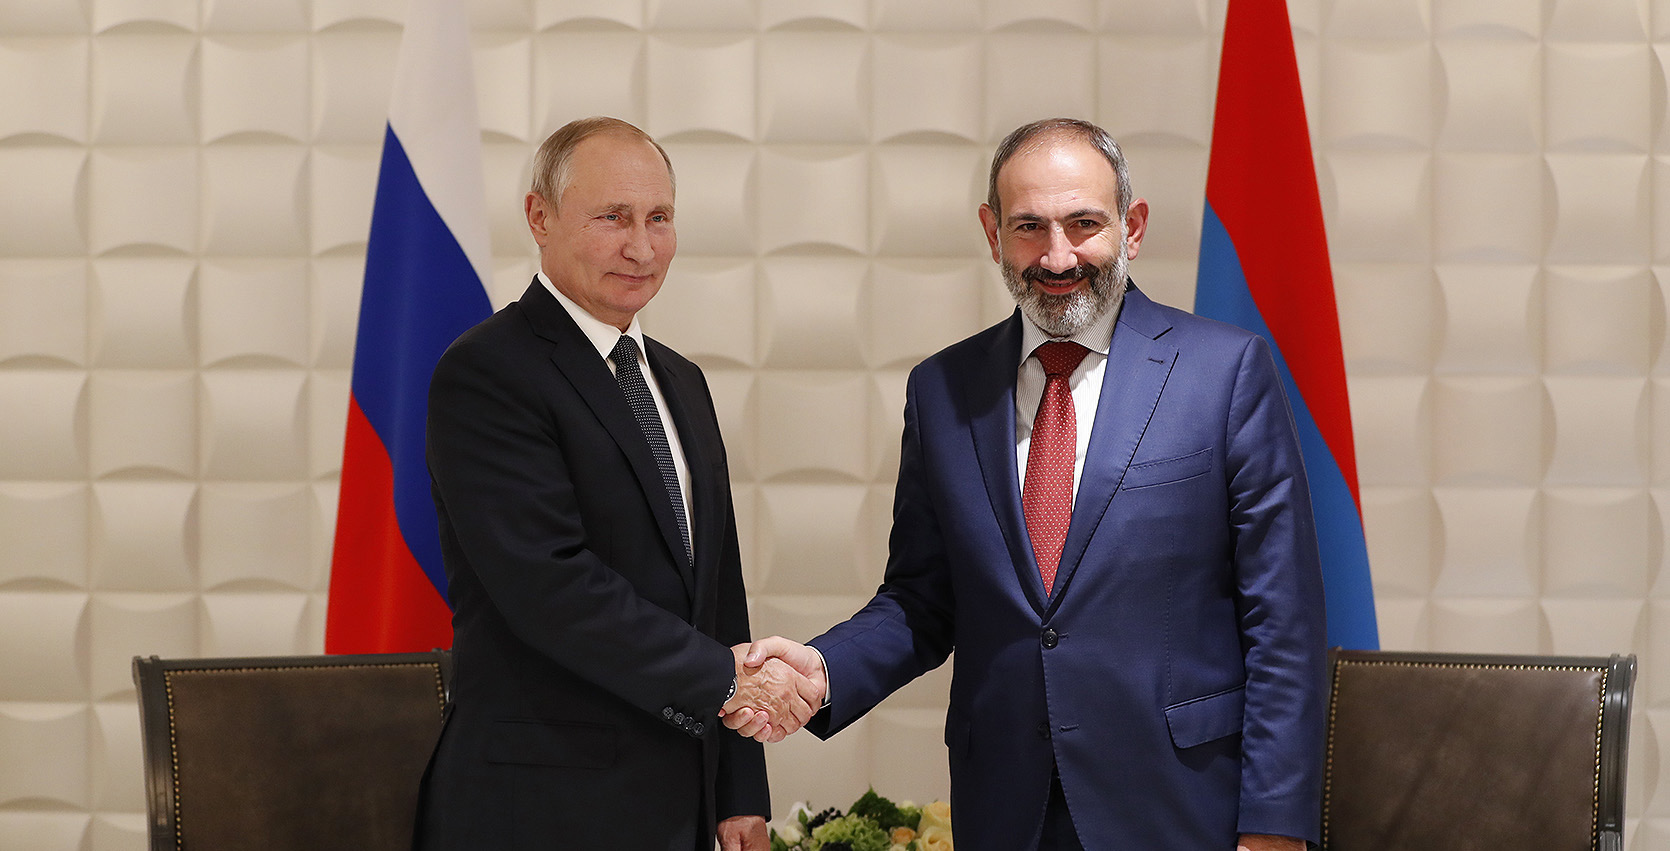 Пашинян поздравил Путина с победой «Единой России» на парламентских выборах